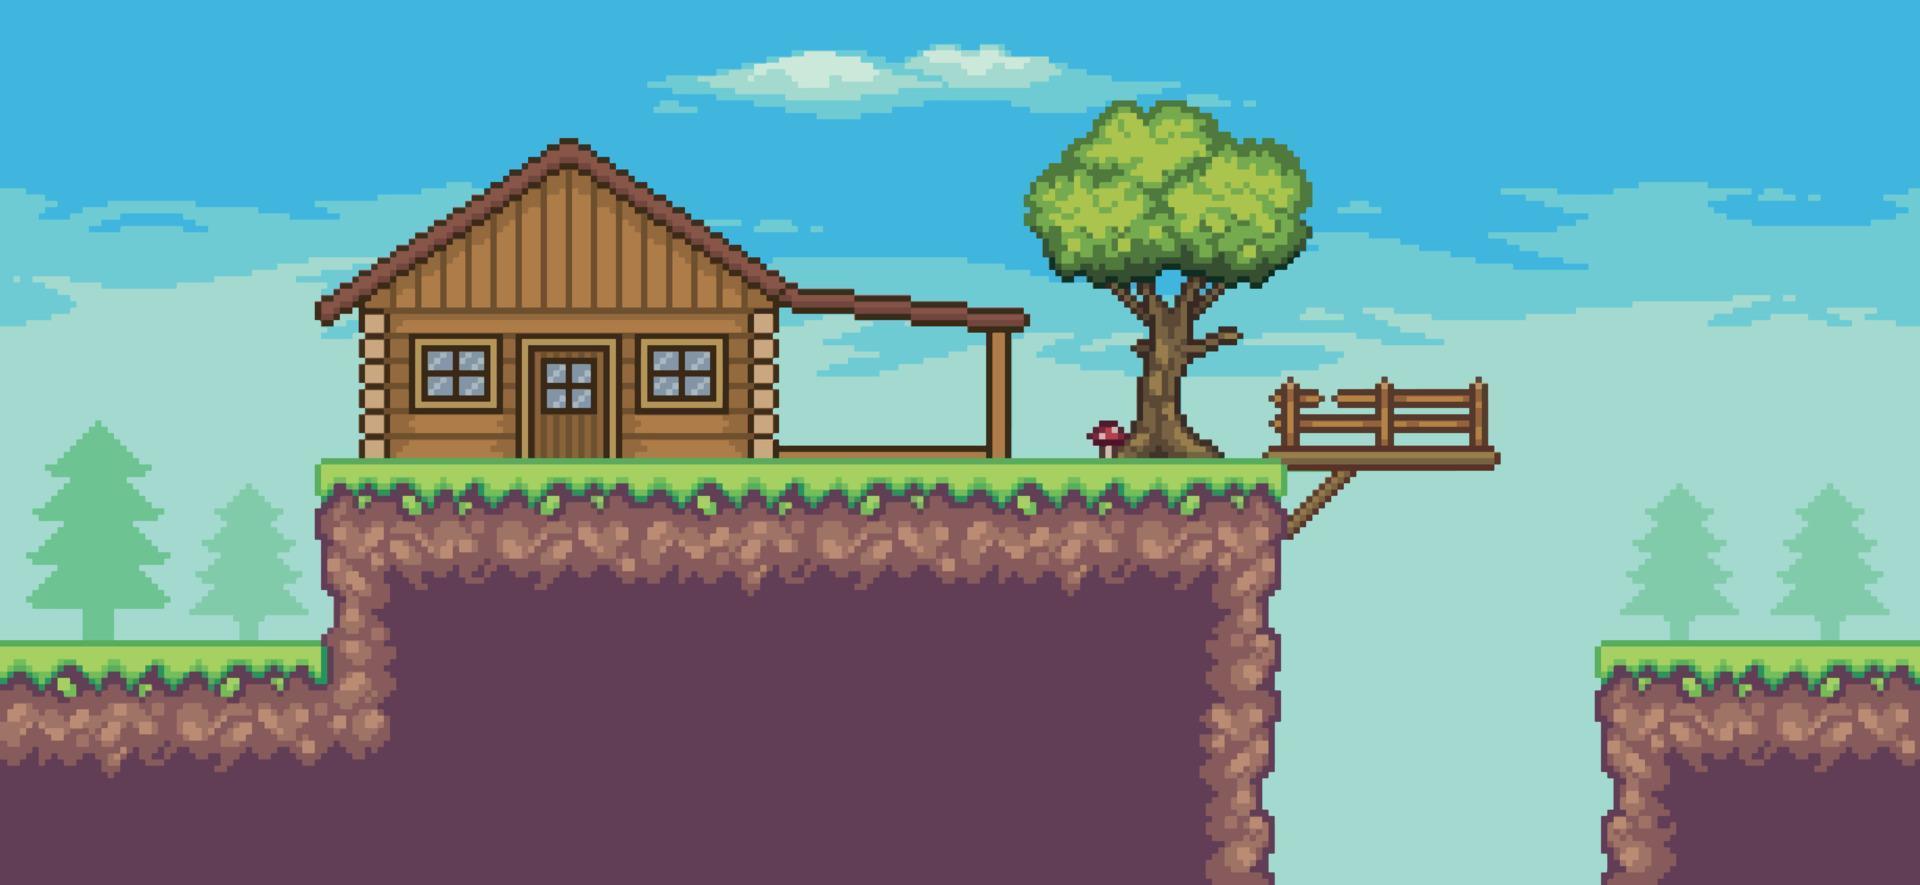 pixelkonst arkadspelscen med trähus, träd, staket, bro och moln 8bit bakgrund vektor